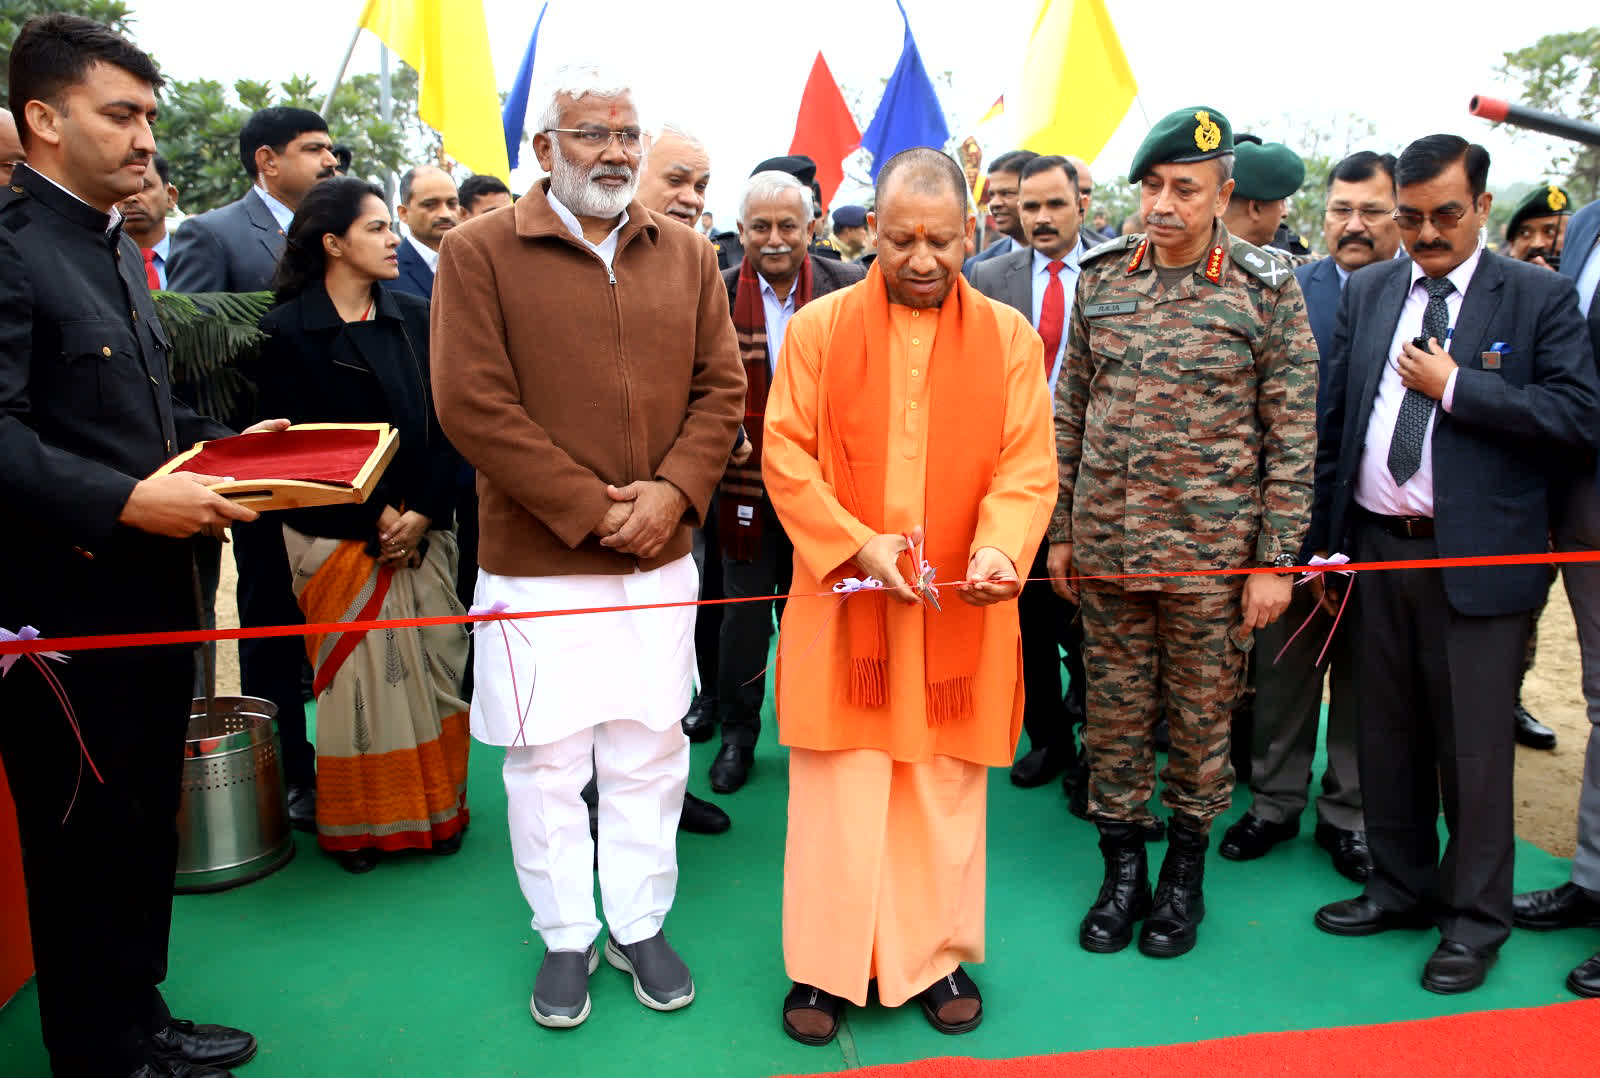 मुख्यमंत्री योगी आदित्यनाथ ने आज सेना के मध्य कमान में आयोजित तीन दिवसीय 'नो योर आर्मी' फेस्टिवल का शुभारंभ किया।